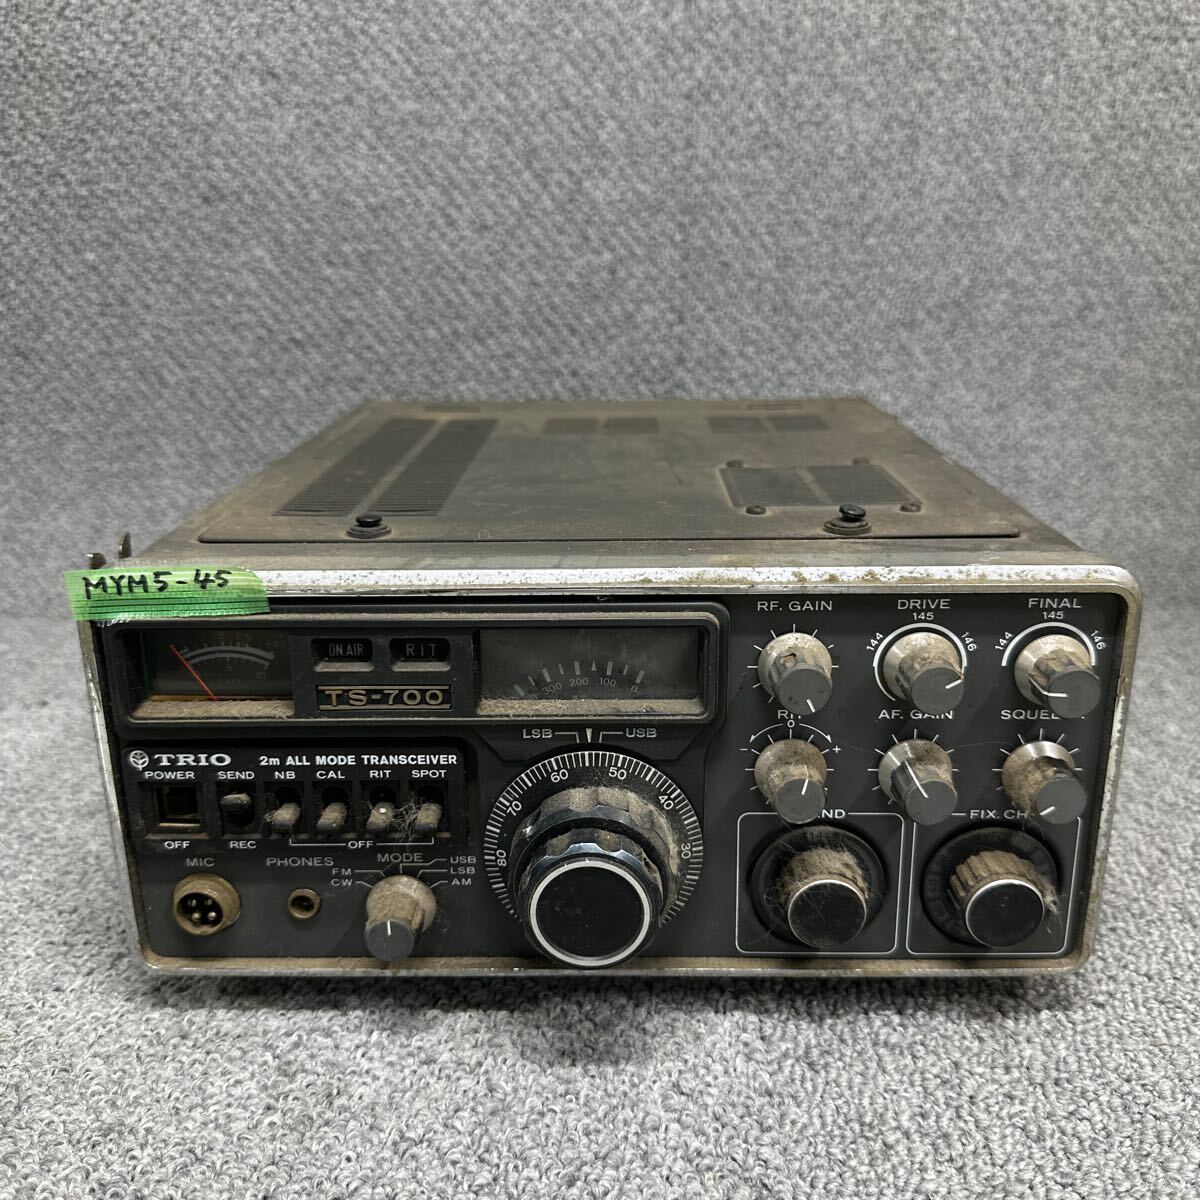 MYM5-45 激安 TRIO トリオ 無線機 TS-700 2m ALL MODE TRANSCEIVER トランシーバー アマチュア無線 中古現状品 ※3回再出品で処分の画像1